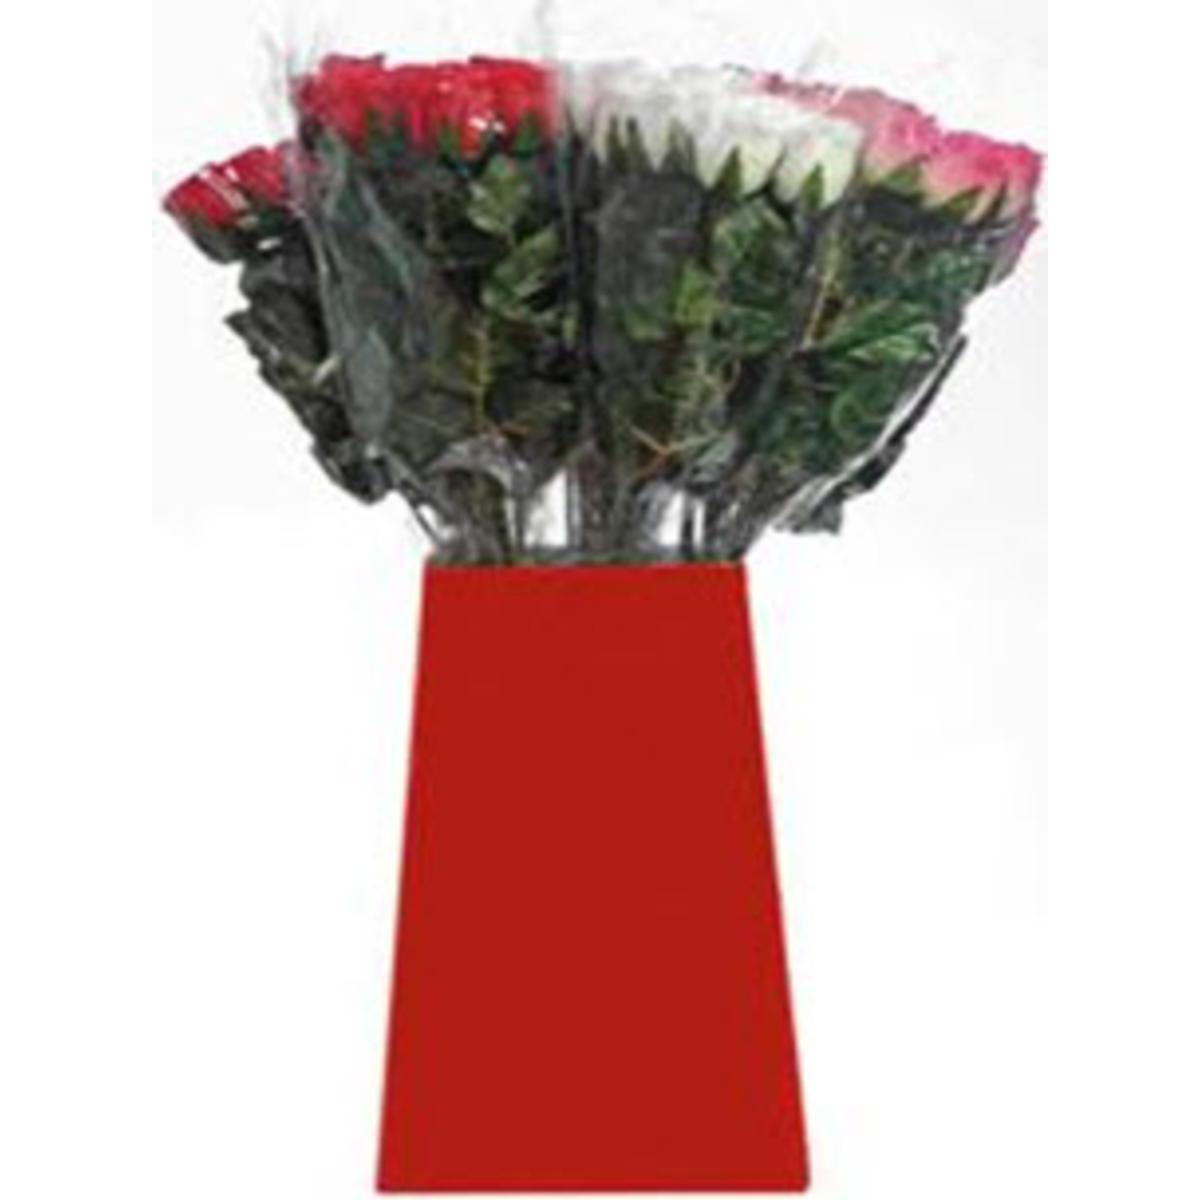 7 boutons de roses - Plastique et polyester - H 60 cm - Blanc Rose Rouge